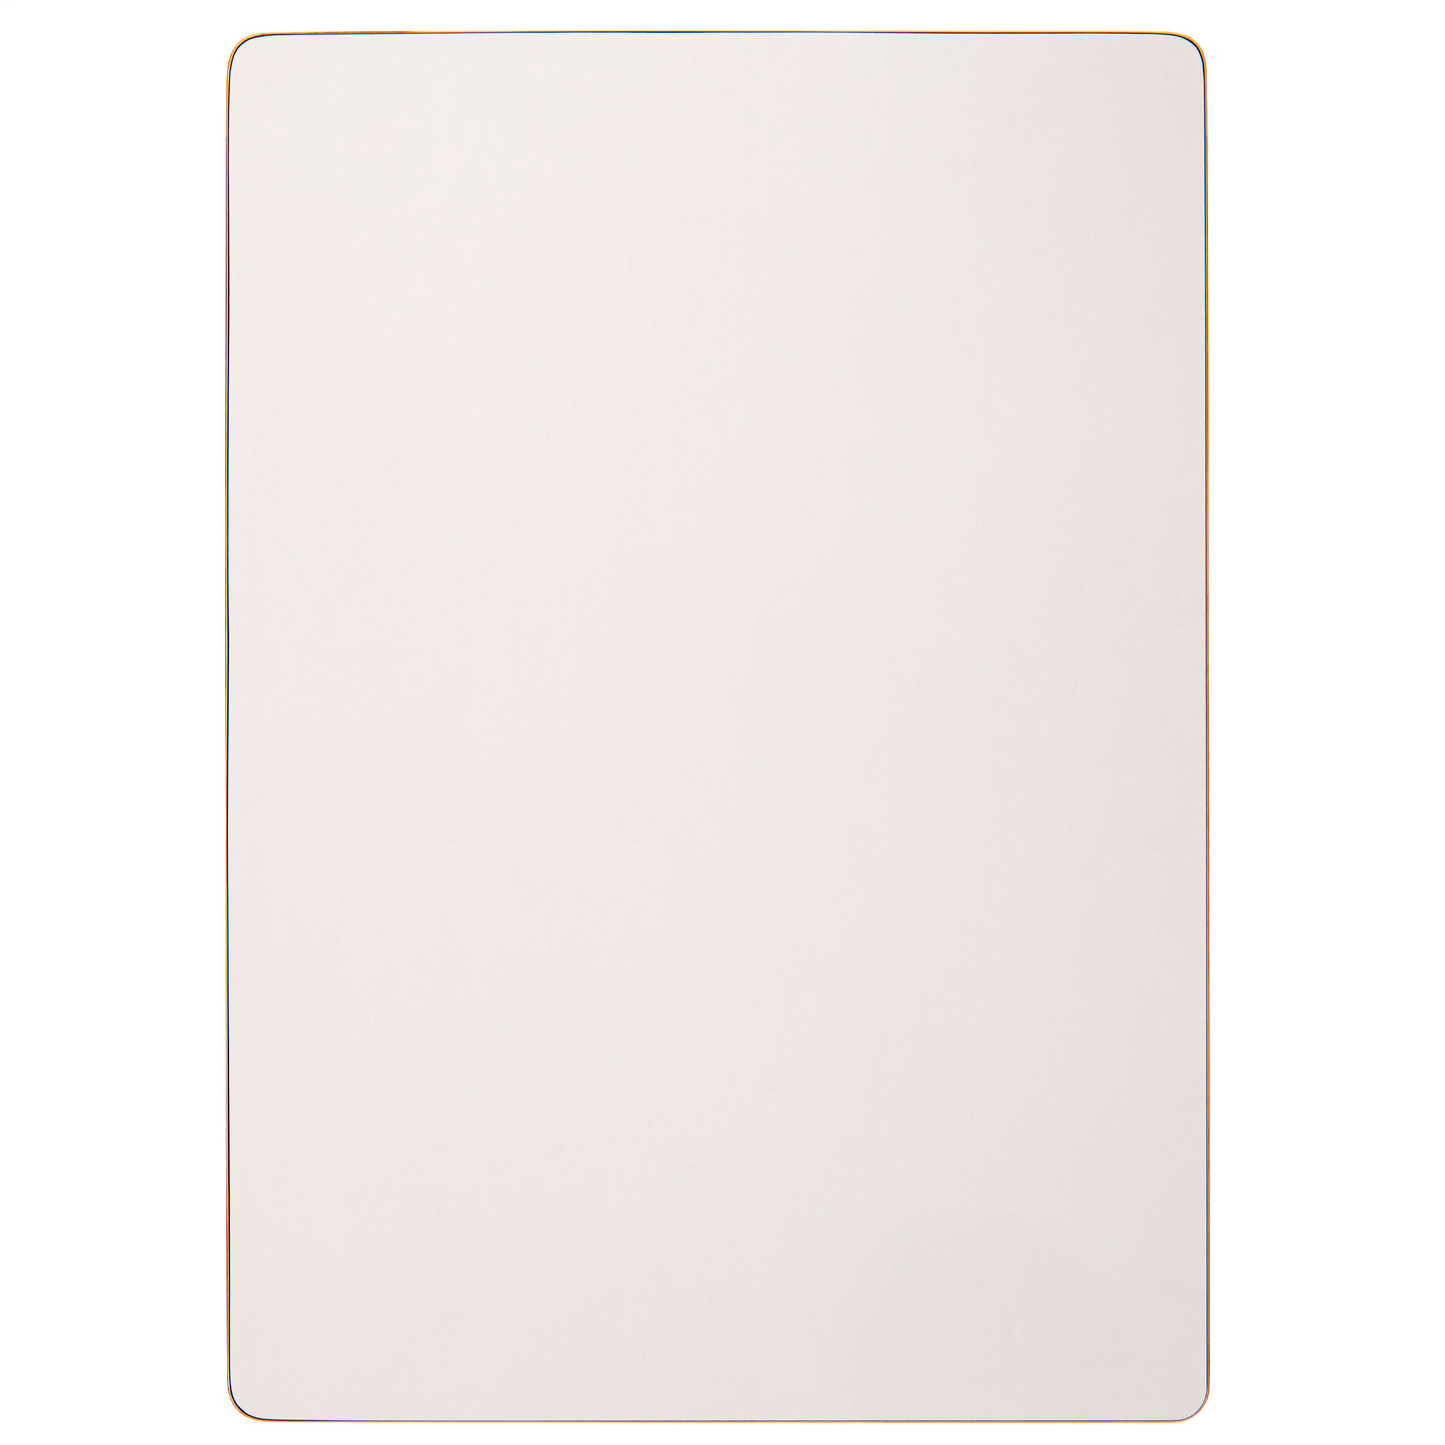 Rechteckige Tischplatte: Farbe Weiß - Nienhuis AMI